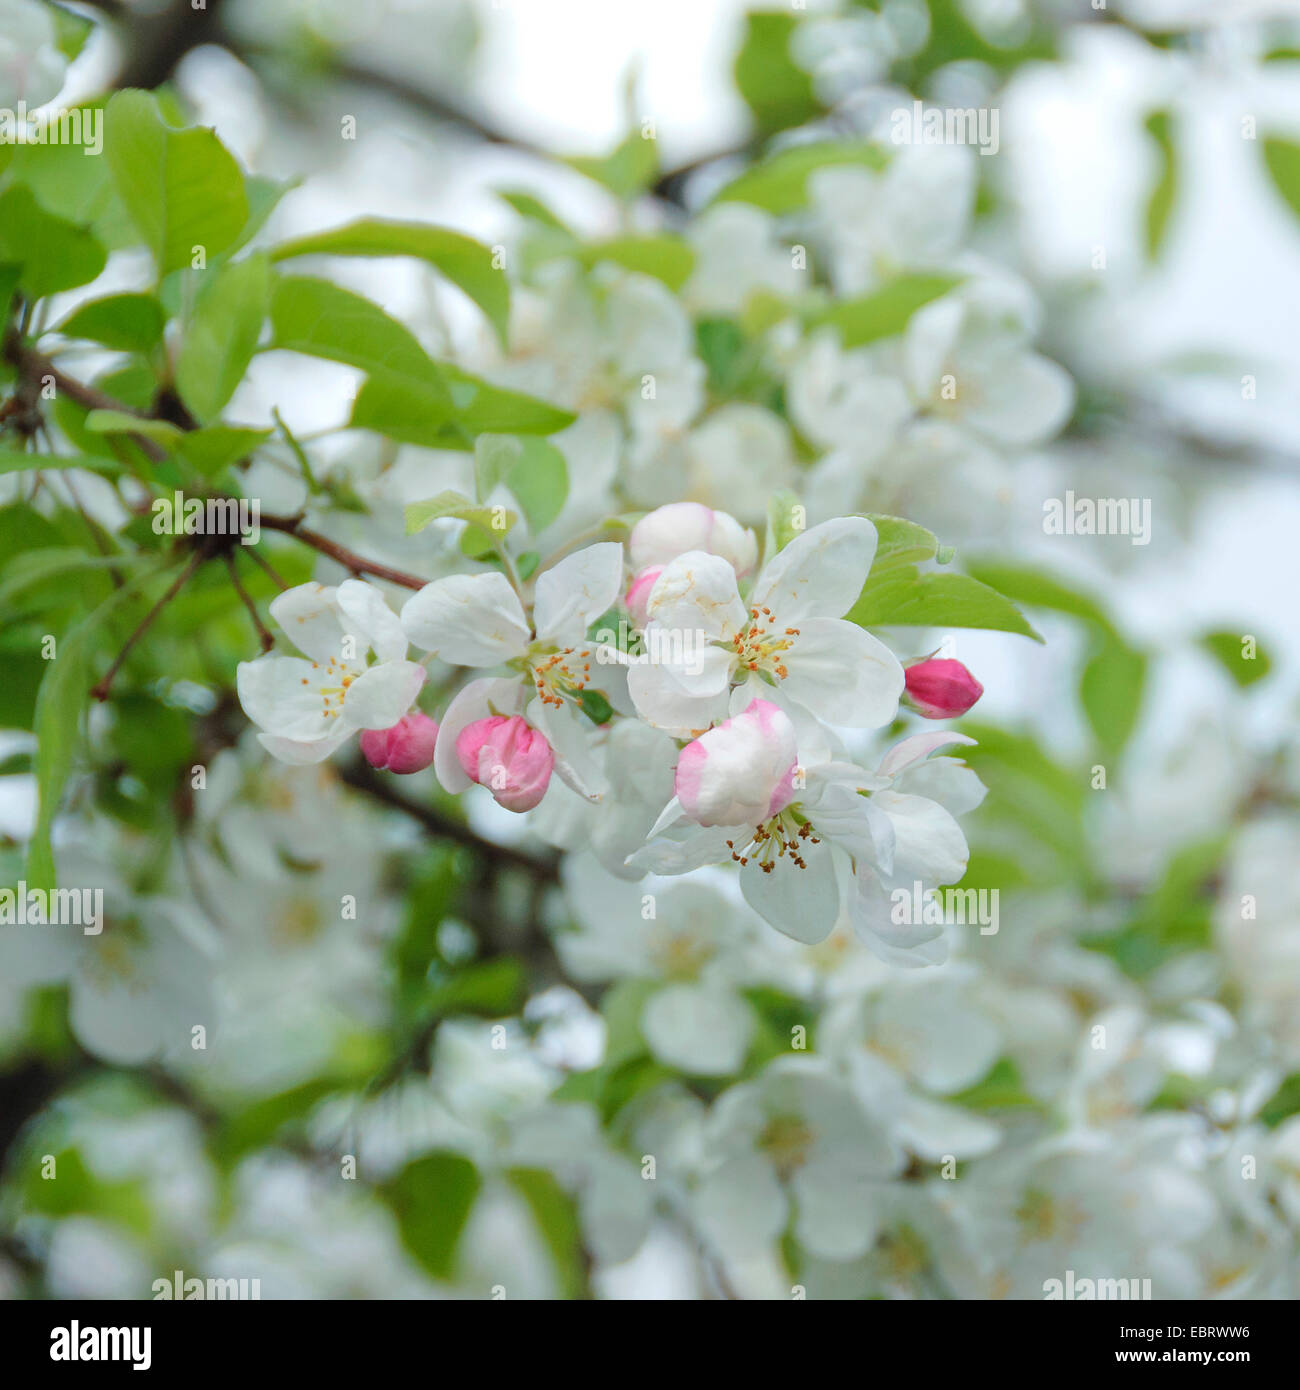 Ornamental apple tree (Malus 'Evereste', Malus Evereste), Cultivar Evereste Stock Photo